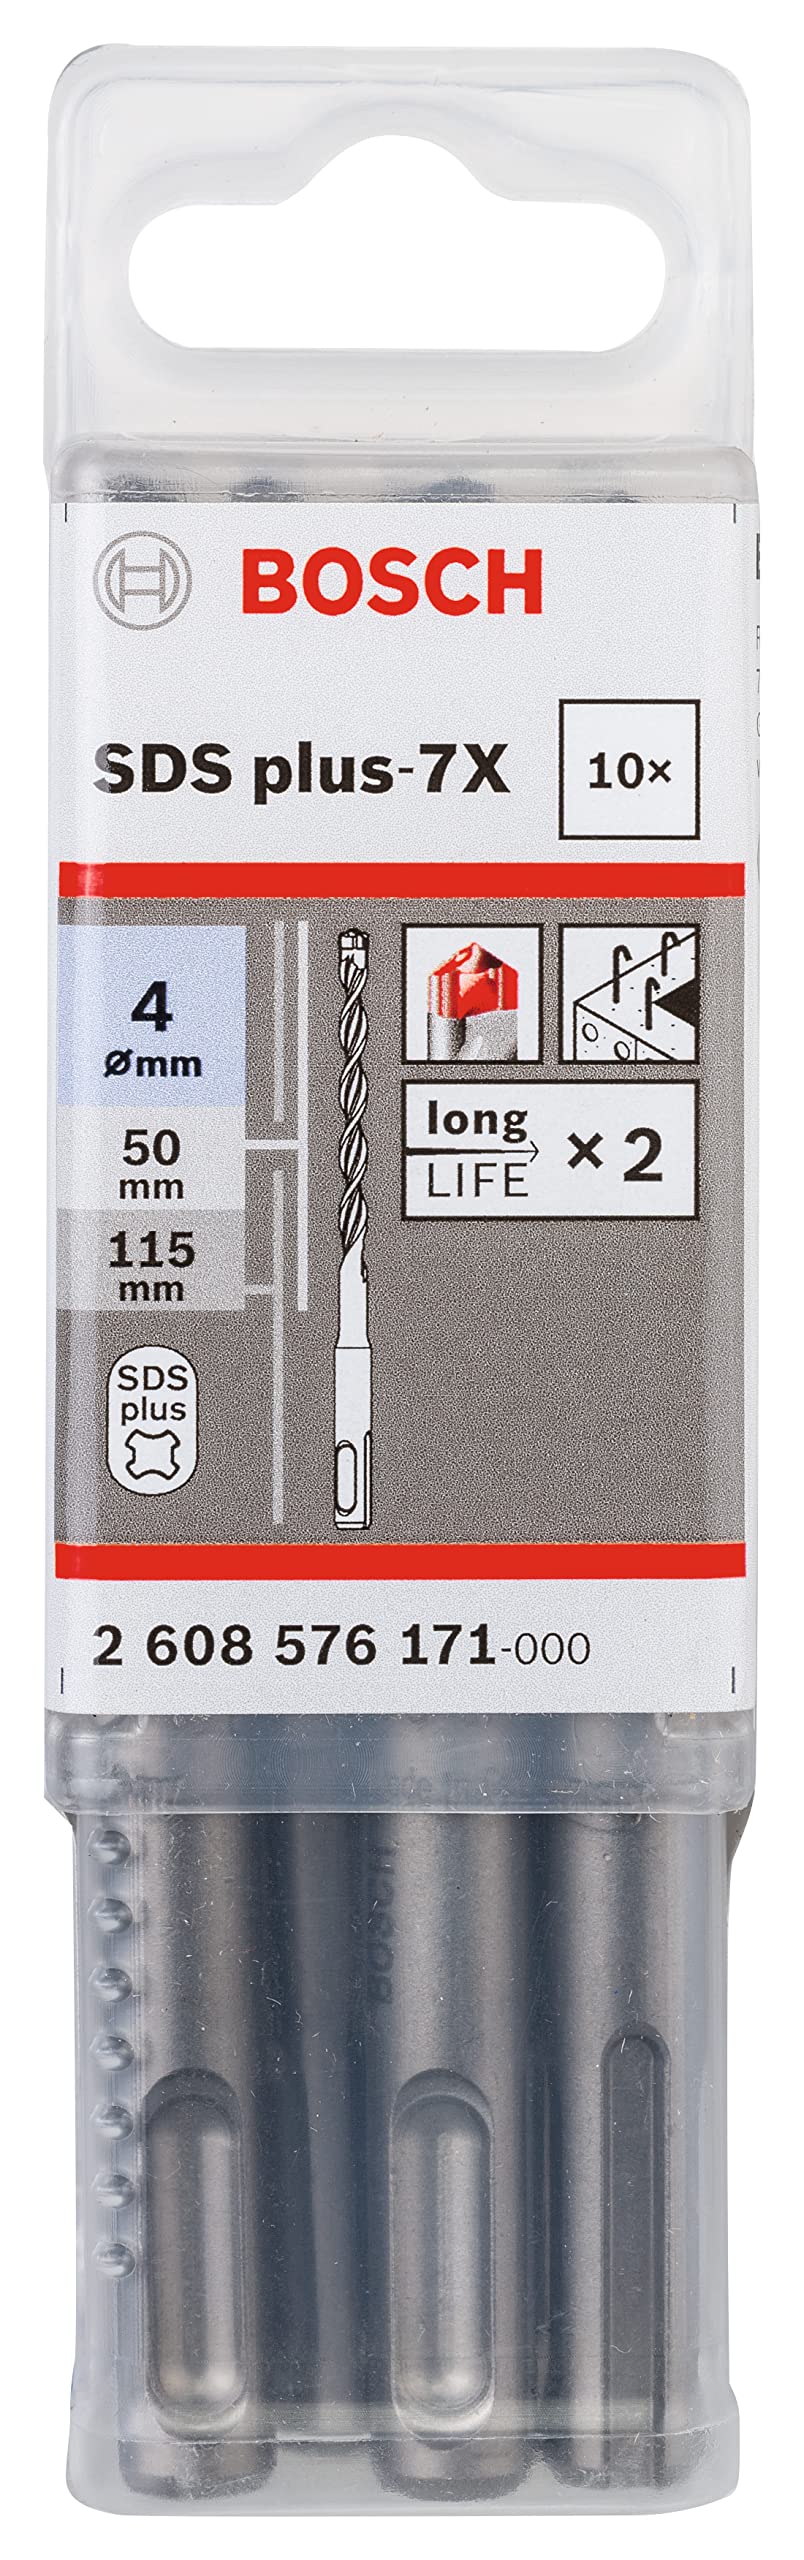 Bosch Professional 10tlg. Hammerbohrer SDS Plus-7X (für Beton und Mauerwerk, 4 x 50 x 115 mm, Zubehör Bohrhammer)